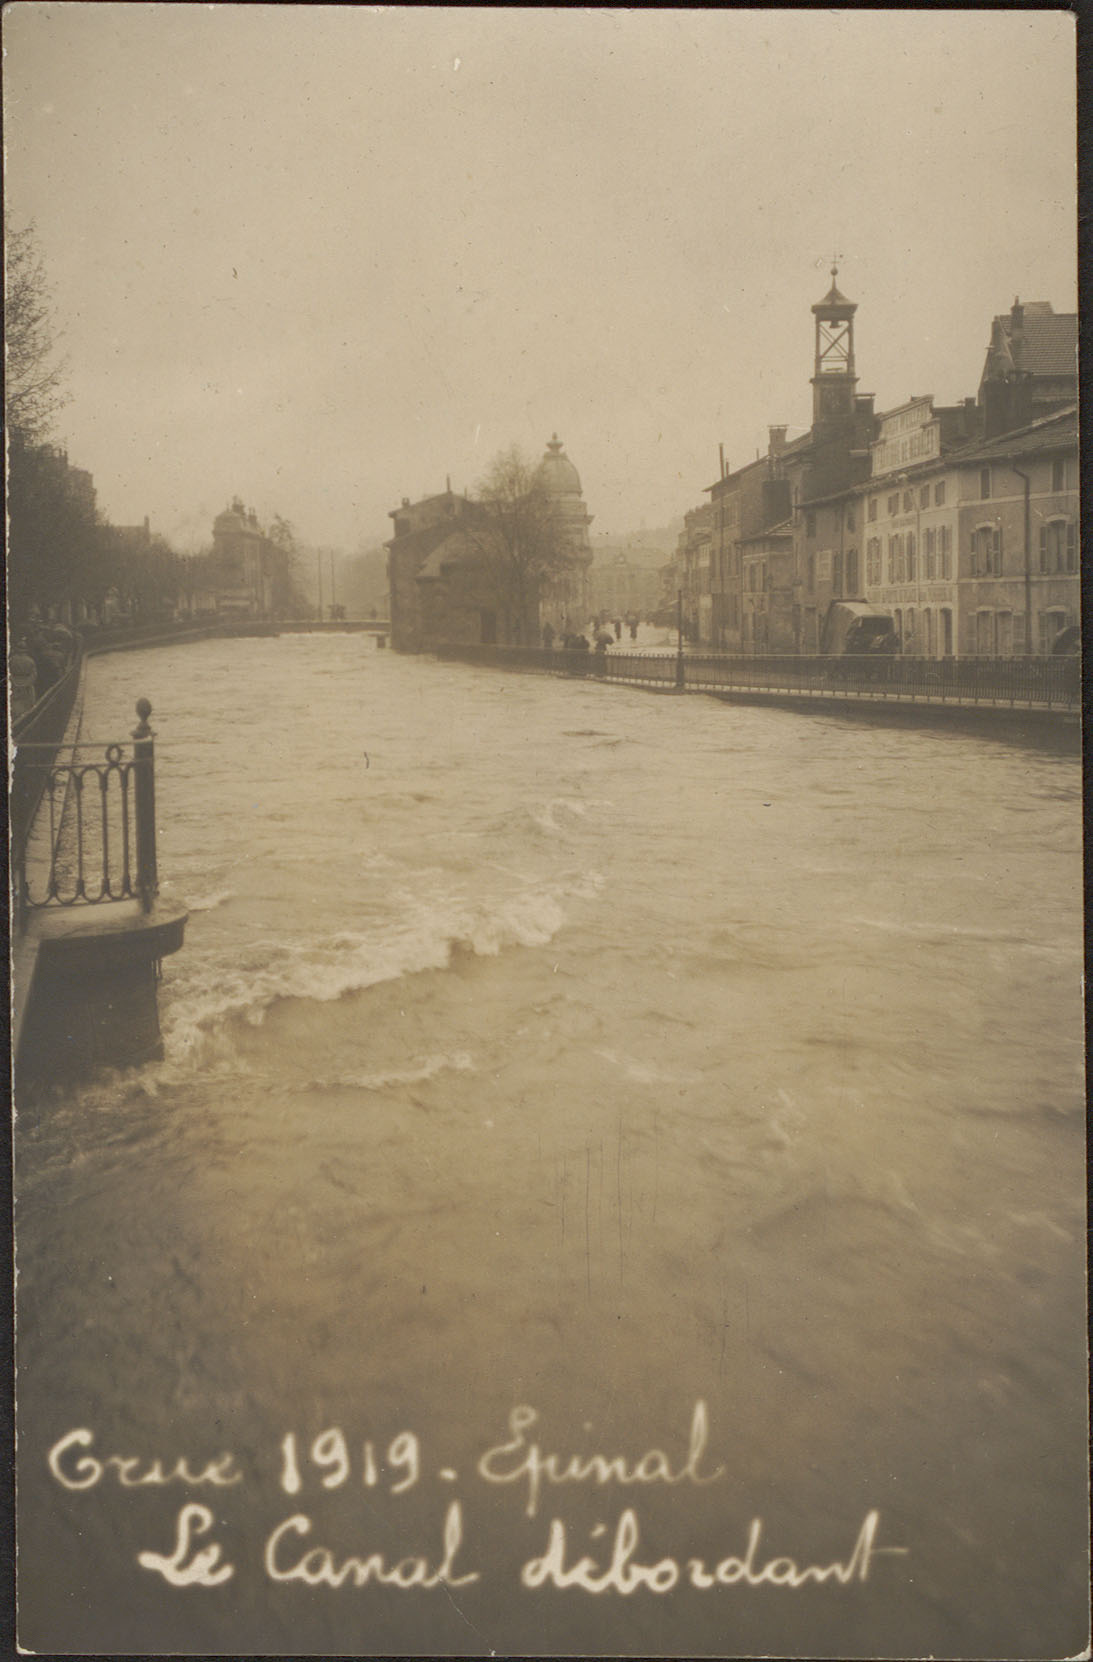 Contenu du Crue 1919, Épinal, Le Canal débordant